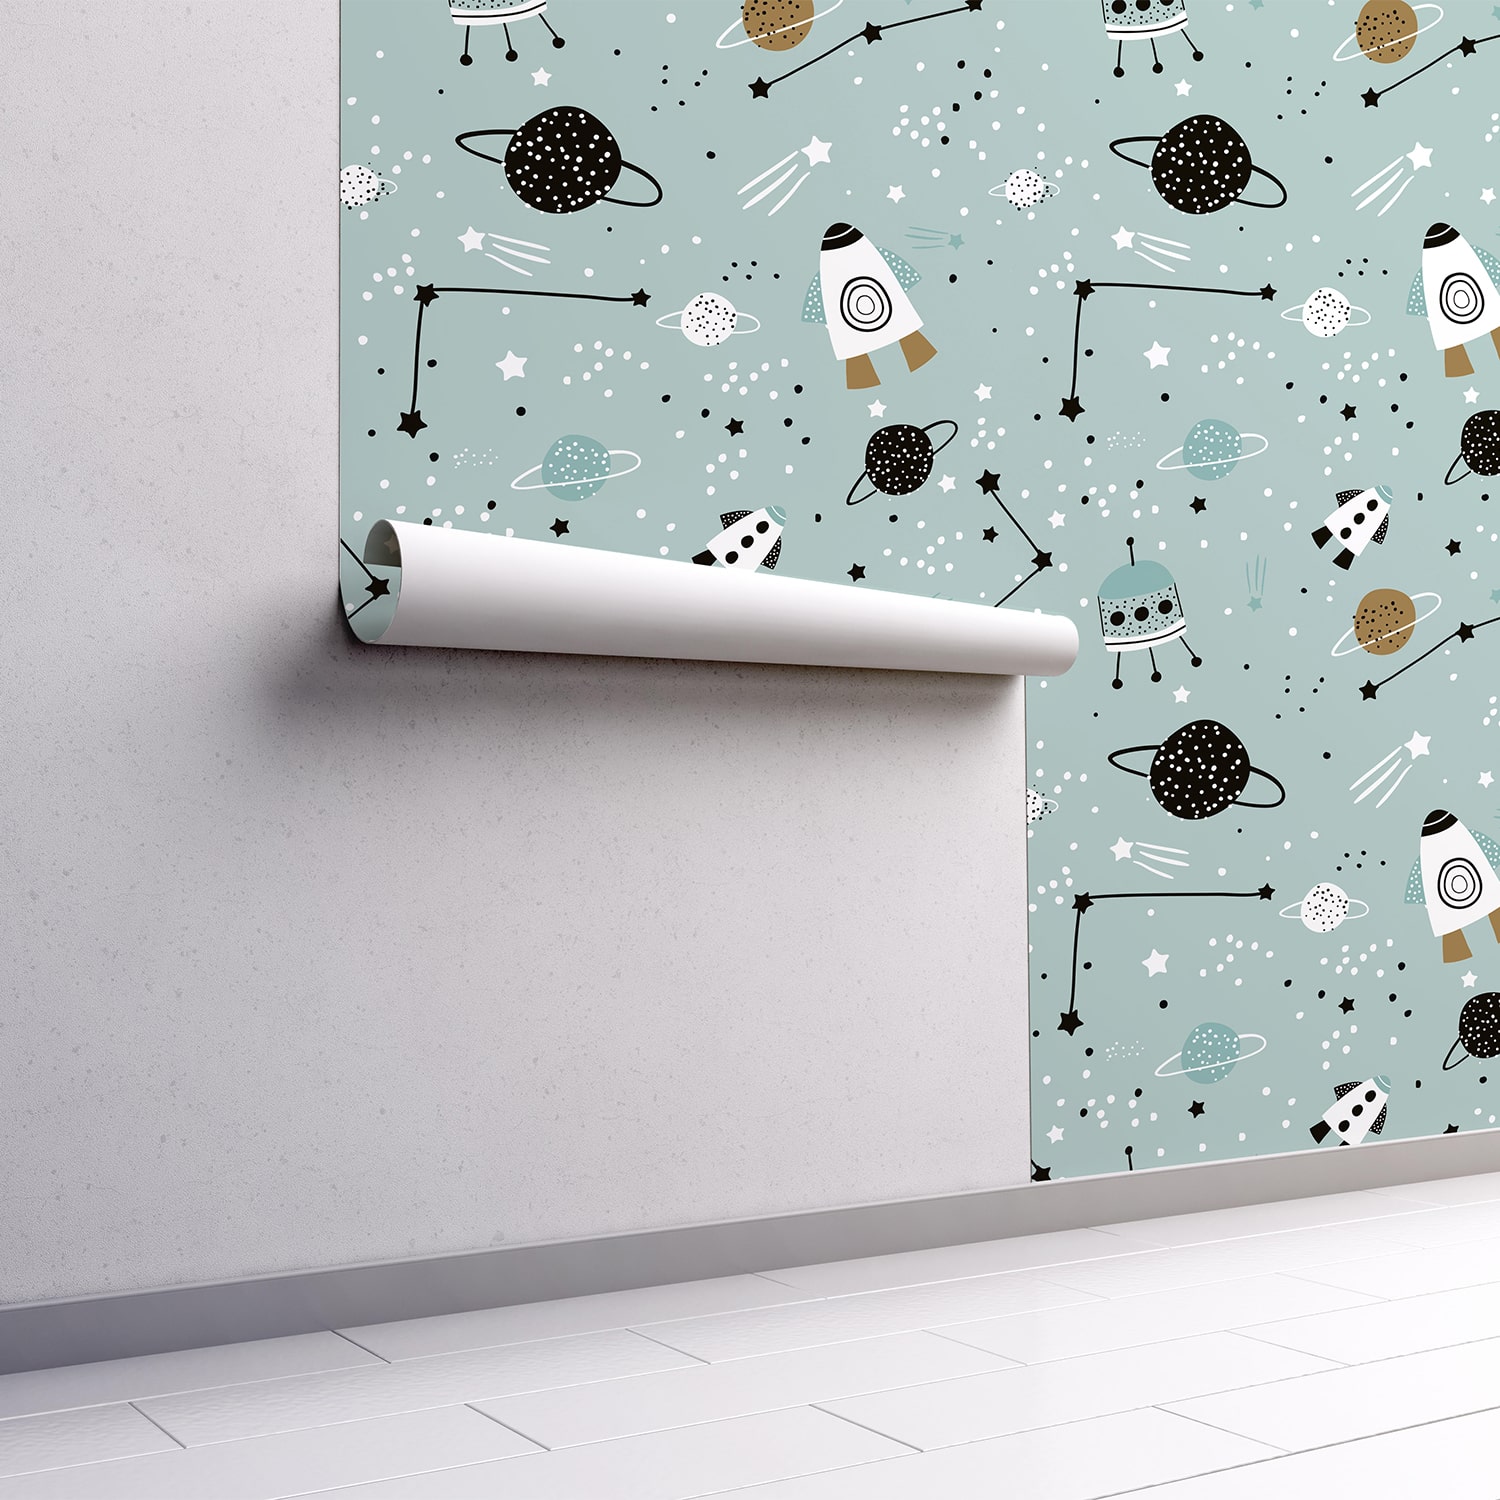 PP89-mur.rouleau-papier-peint-adhesif-decoratif-revetement-vinyle-motifs-espace-renovation-meuble-mur-min